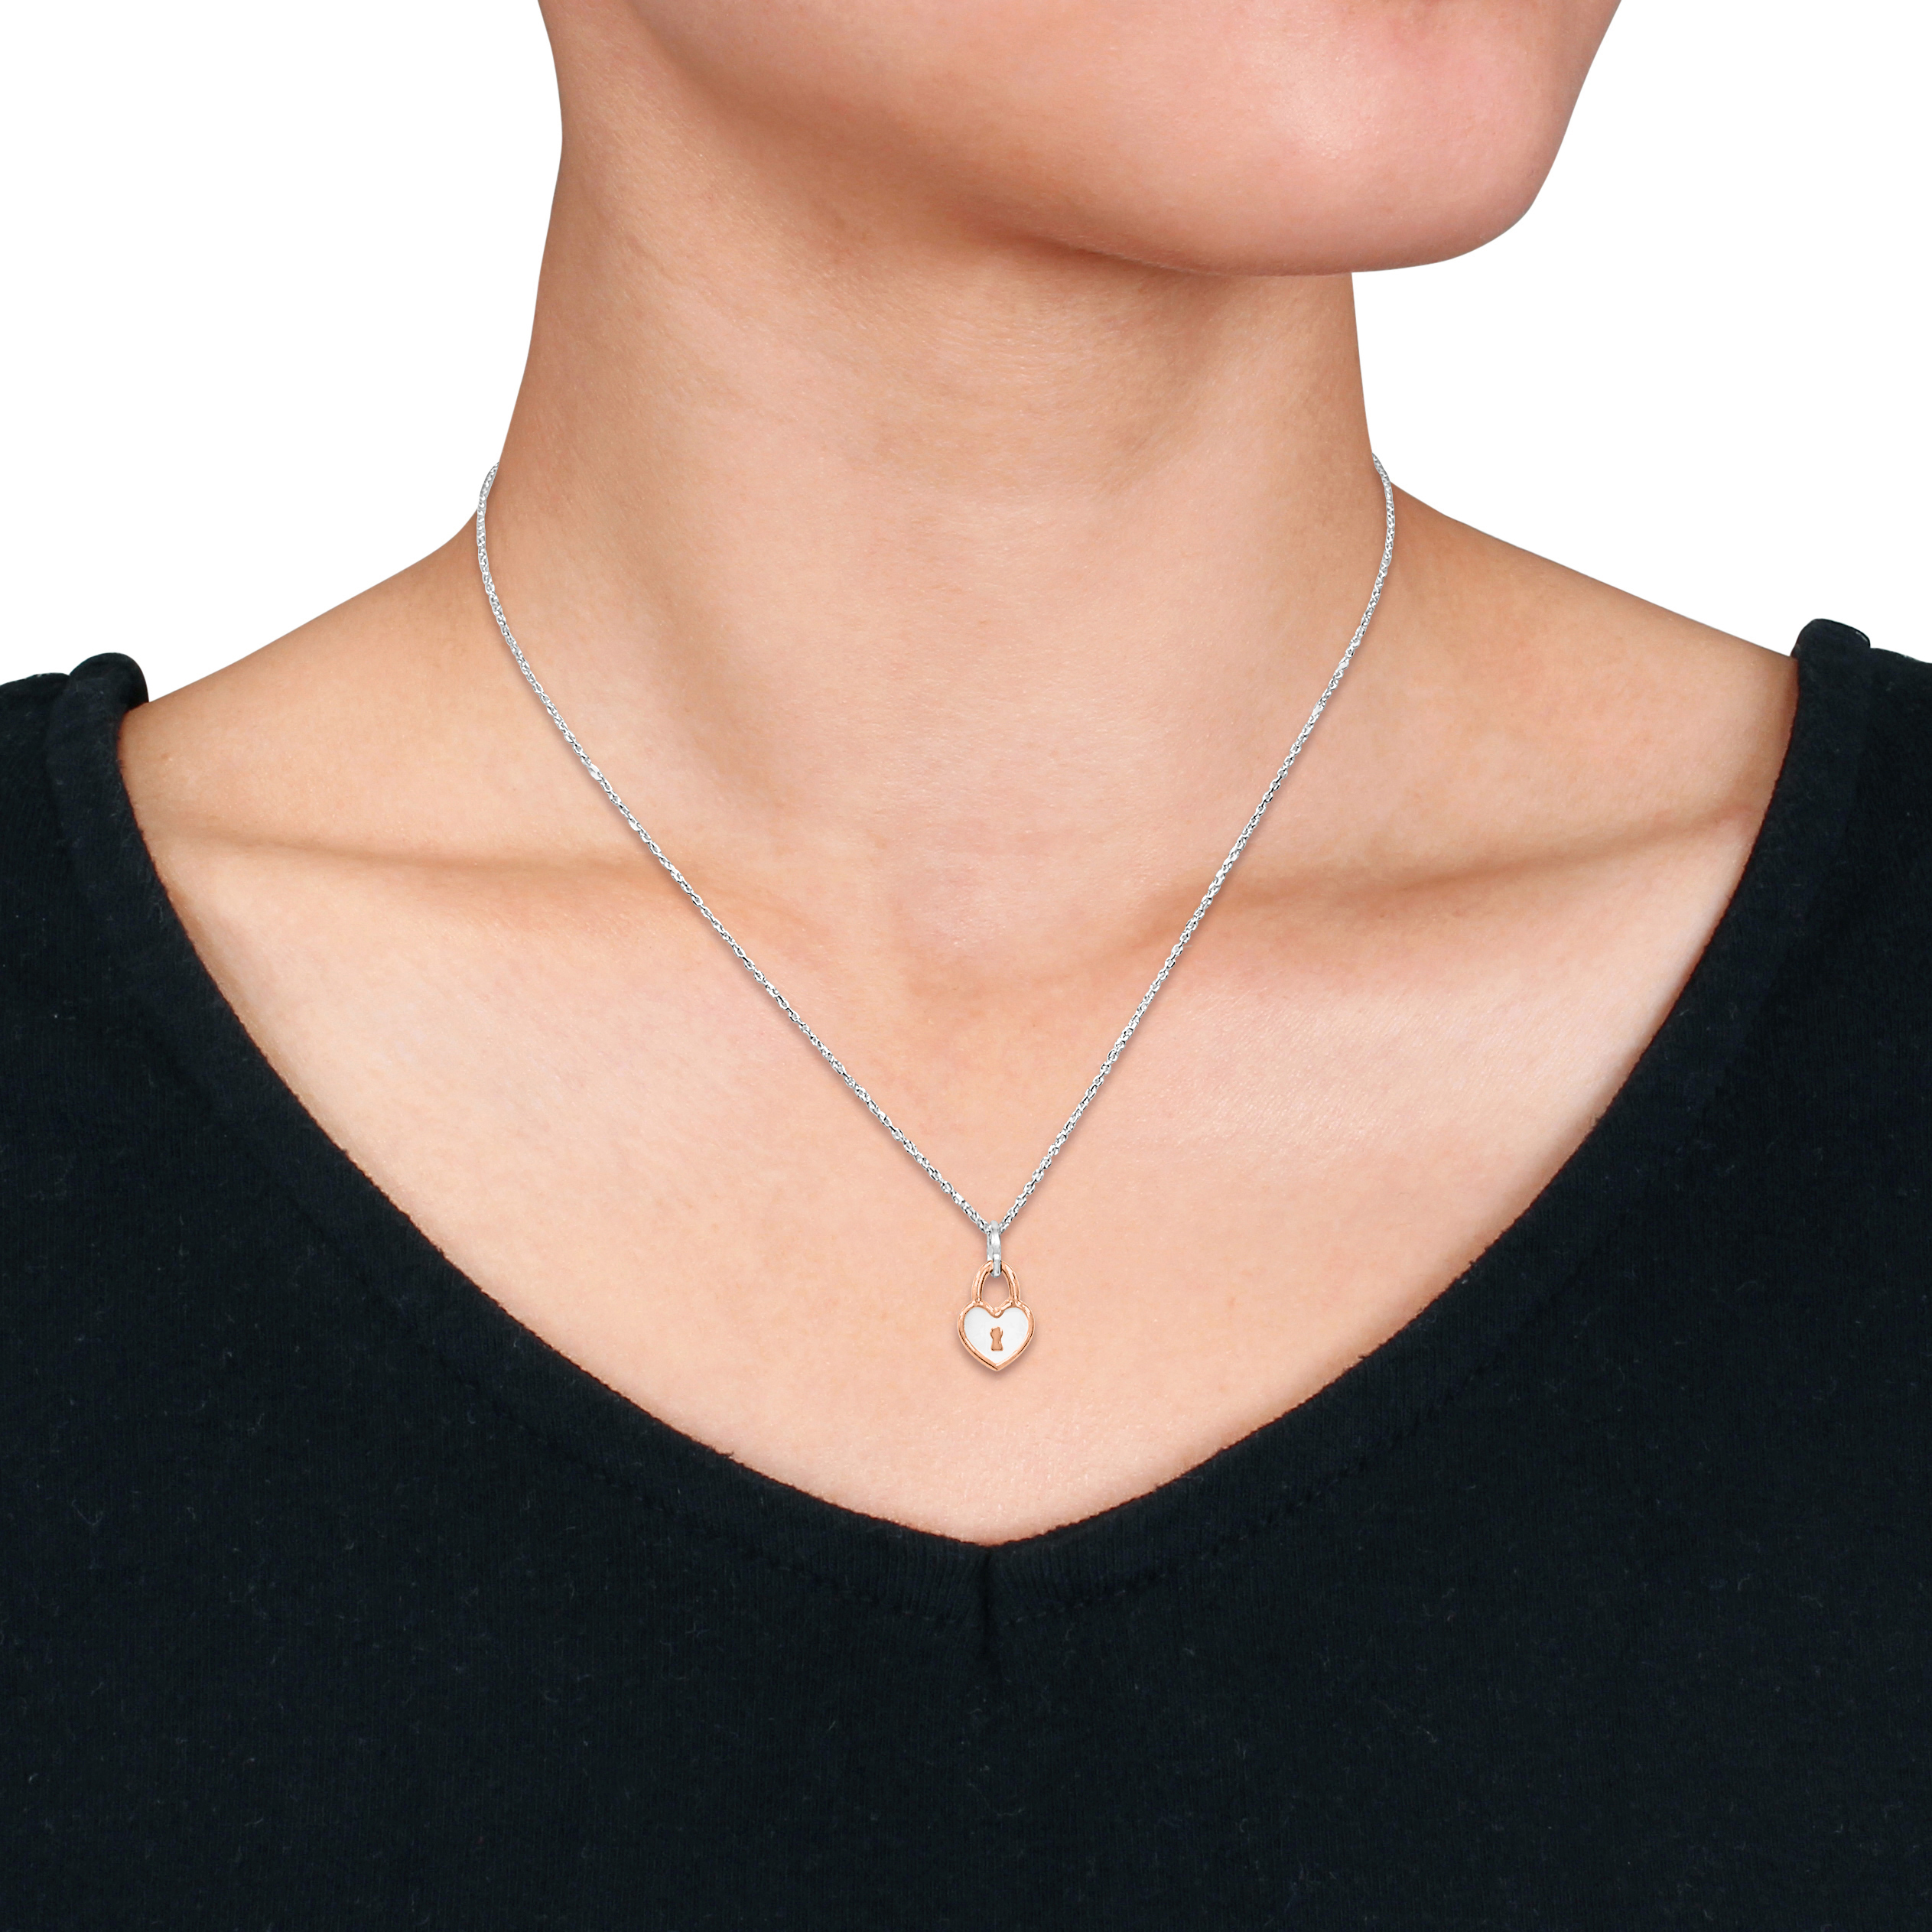 Pink Heart Lock Charm Necklace w/ White Enamel in Sterling Silver- 16+2 in.